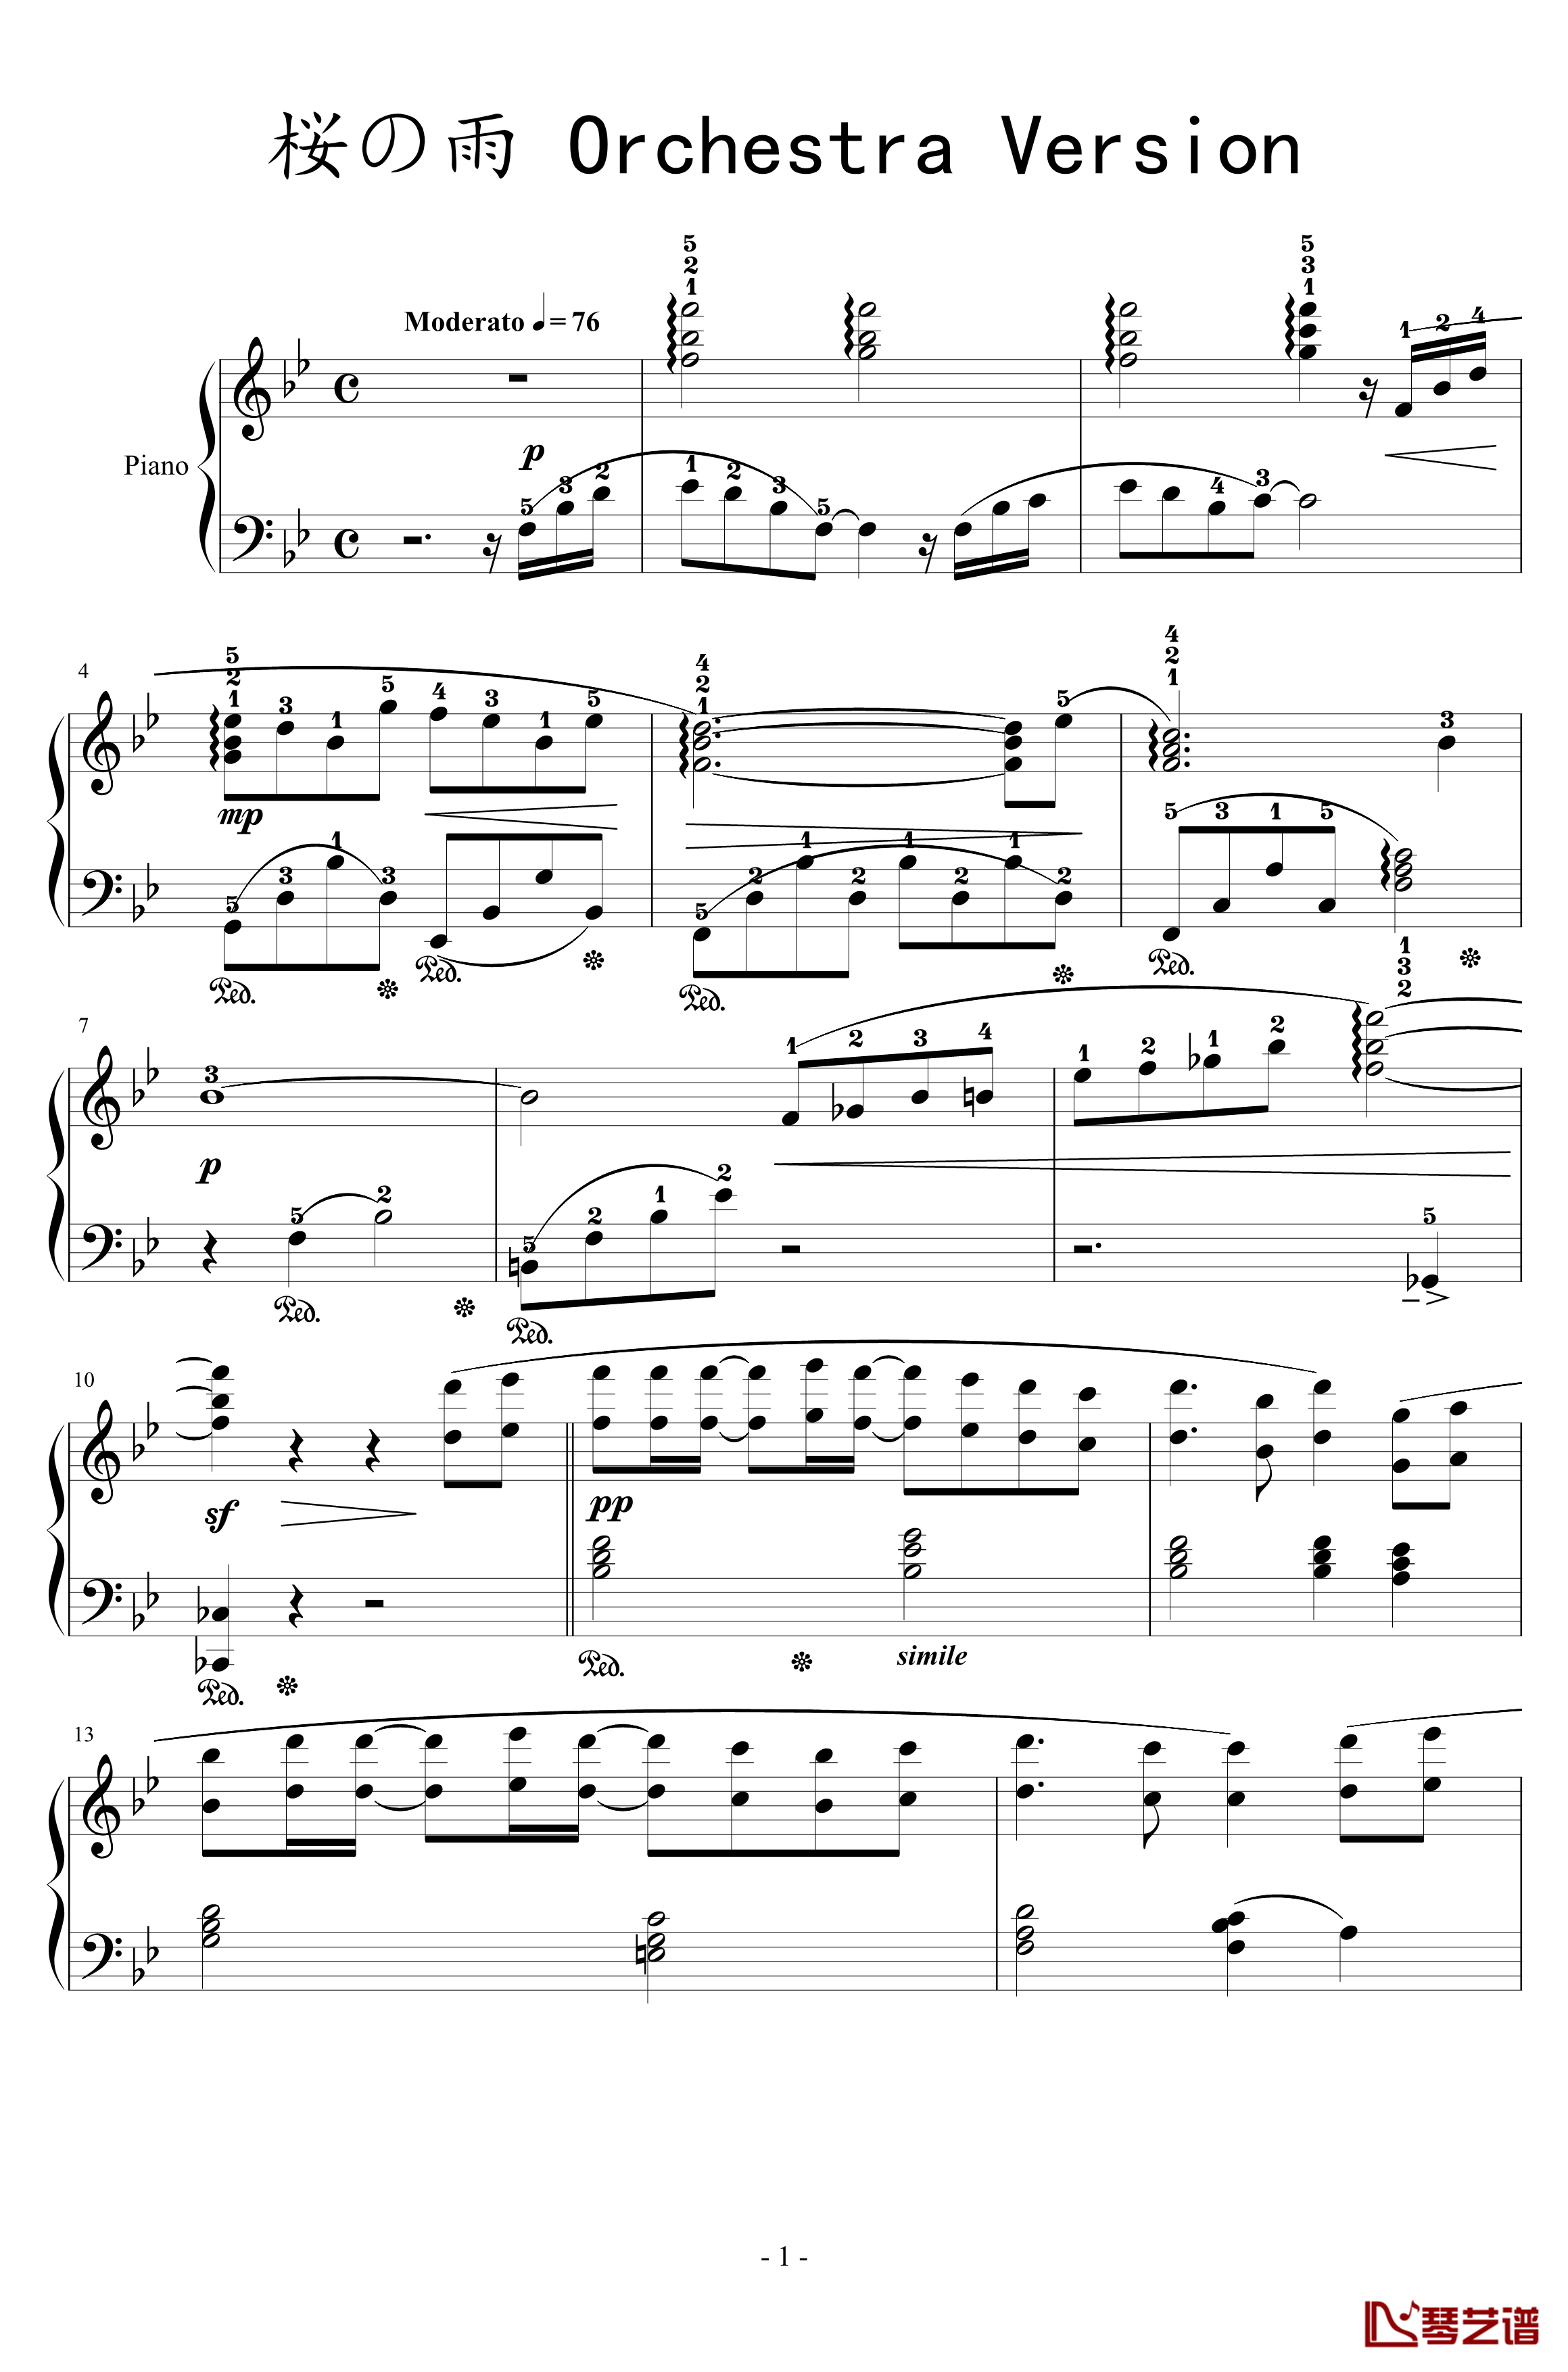 樱之雨钢琴谱-交响乐版-初音未来1